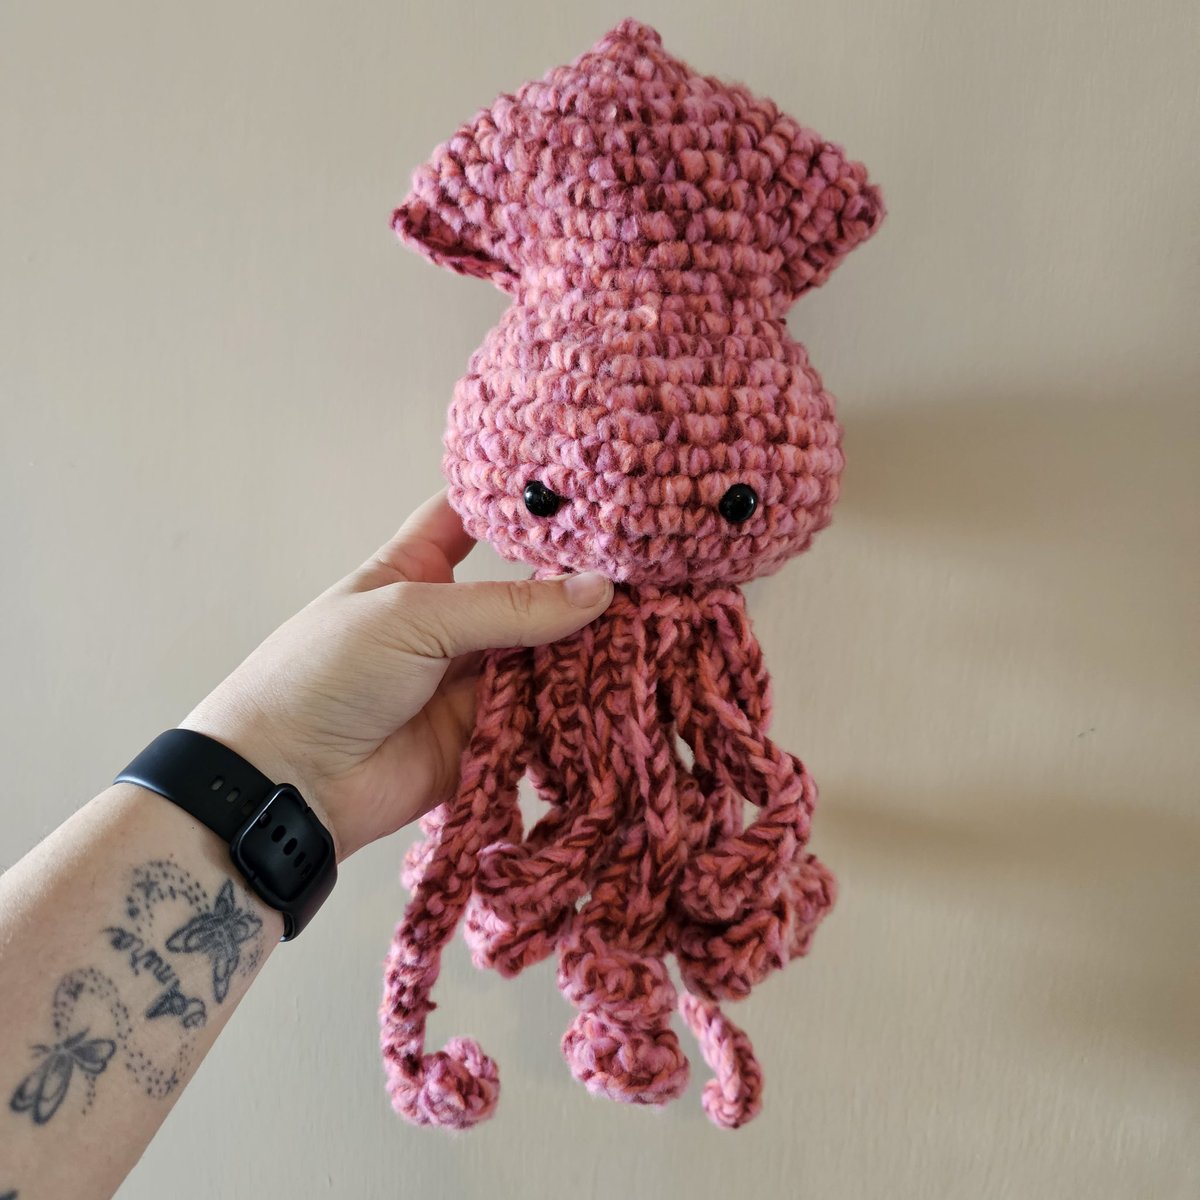 Might become slightly addicted to making these squid

#crochet #crocheter #crocheteroftwitter #squid #squidstuffy #crochetsquid #crochettoy #handmade #handmadeisbest #shopsmall #supporthandmade #yarnlife #bernatyarn #makersgonnamake